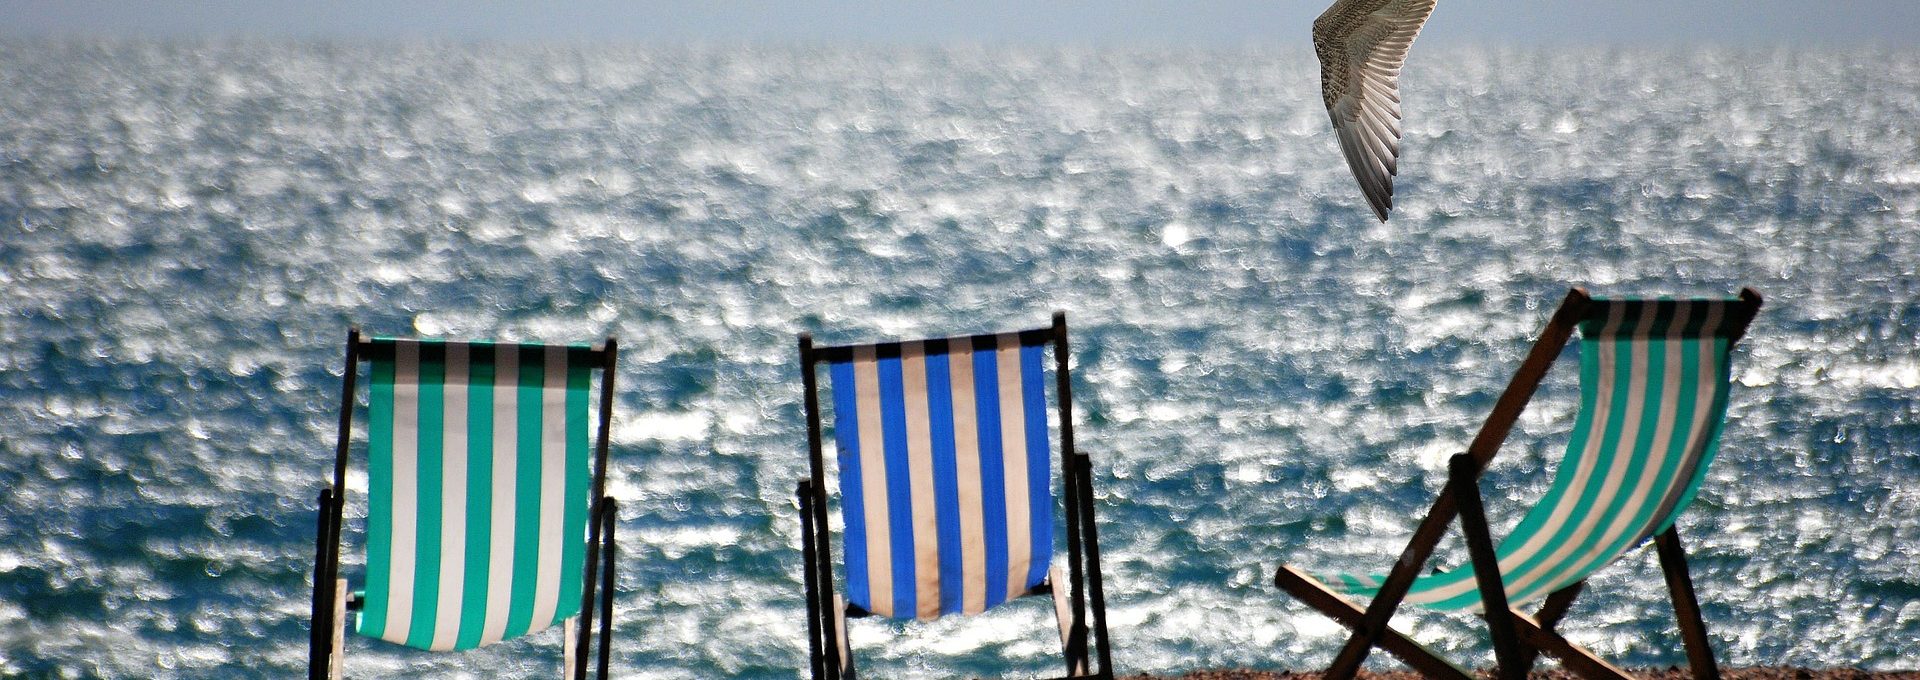 Cadeiras de praia em frente ao mar e uma gaivota voando sobre elas